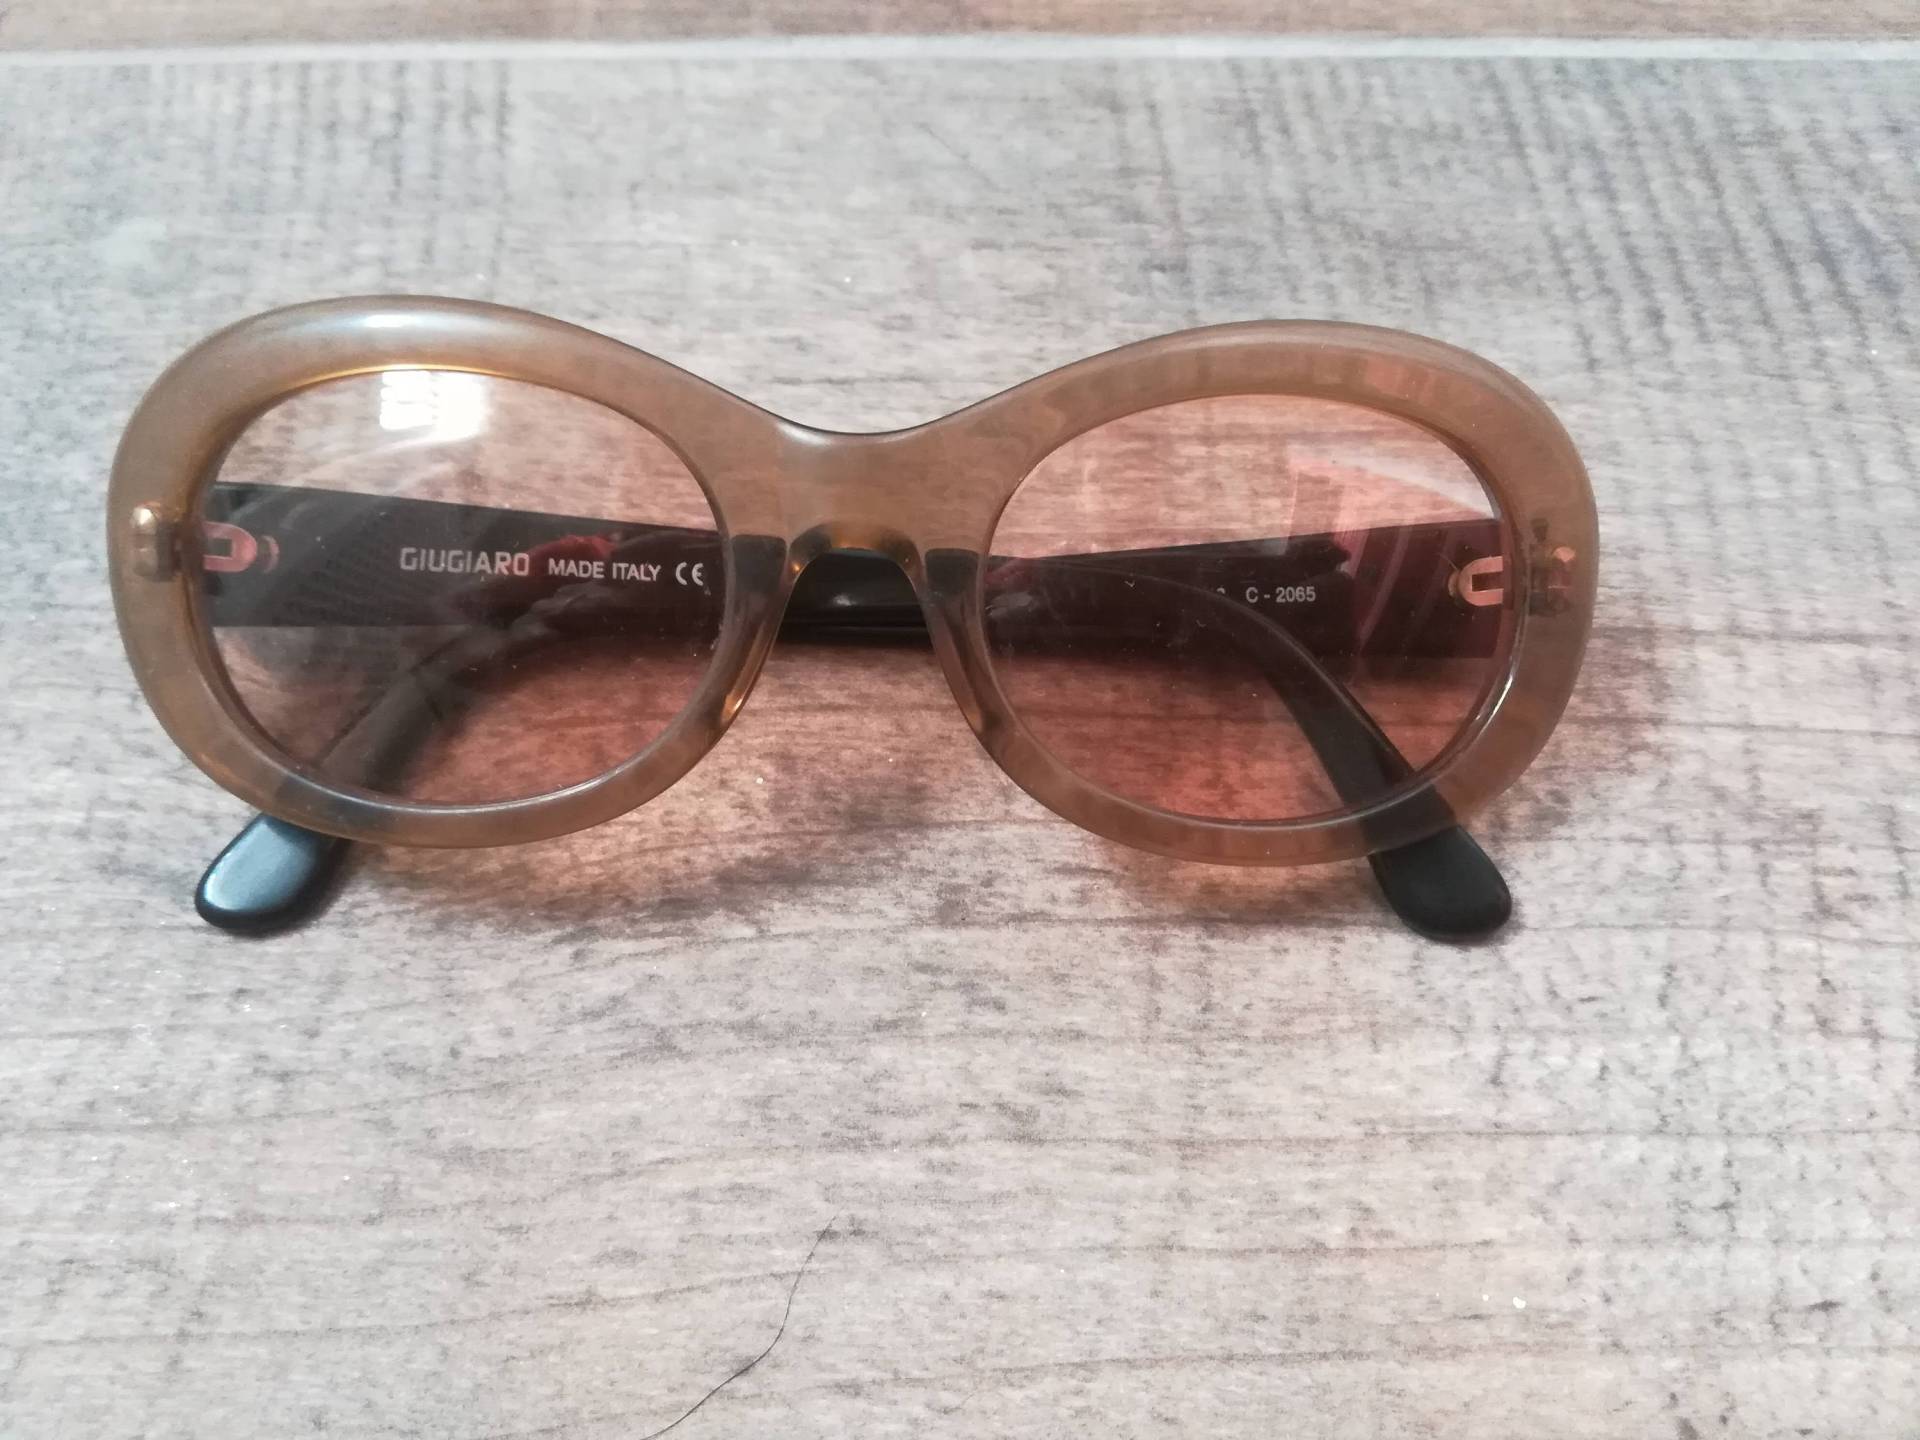 Giugiaro Oval Sonnenbrille Vintage 80 Damen Sonnenbrille Pfirsich Gelb Celluloid Schwarz Bügel Mod. G628 C2065 Made in Italy von presquenew